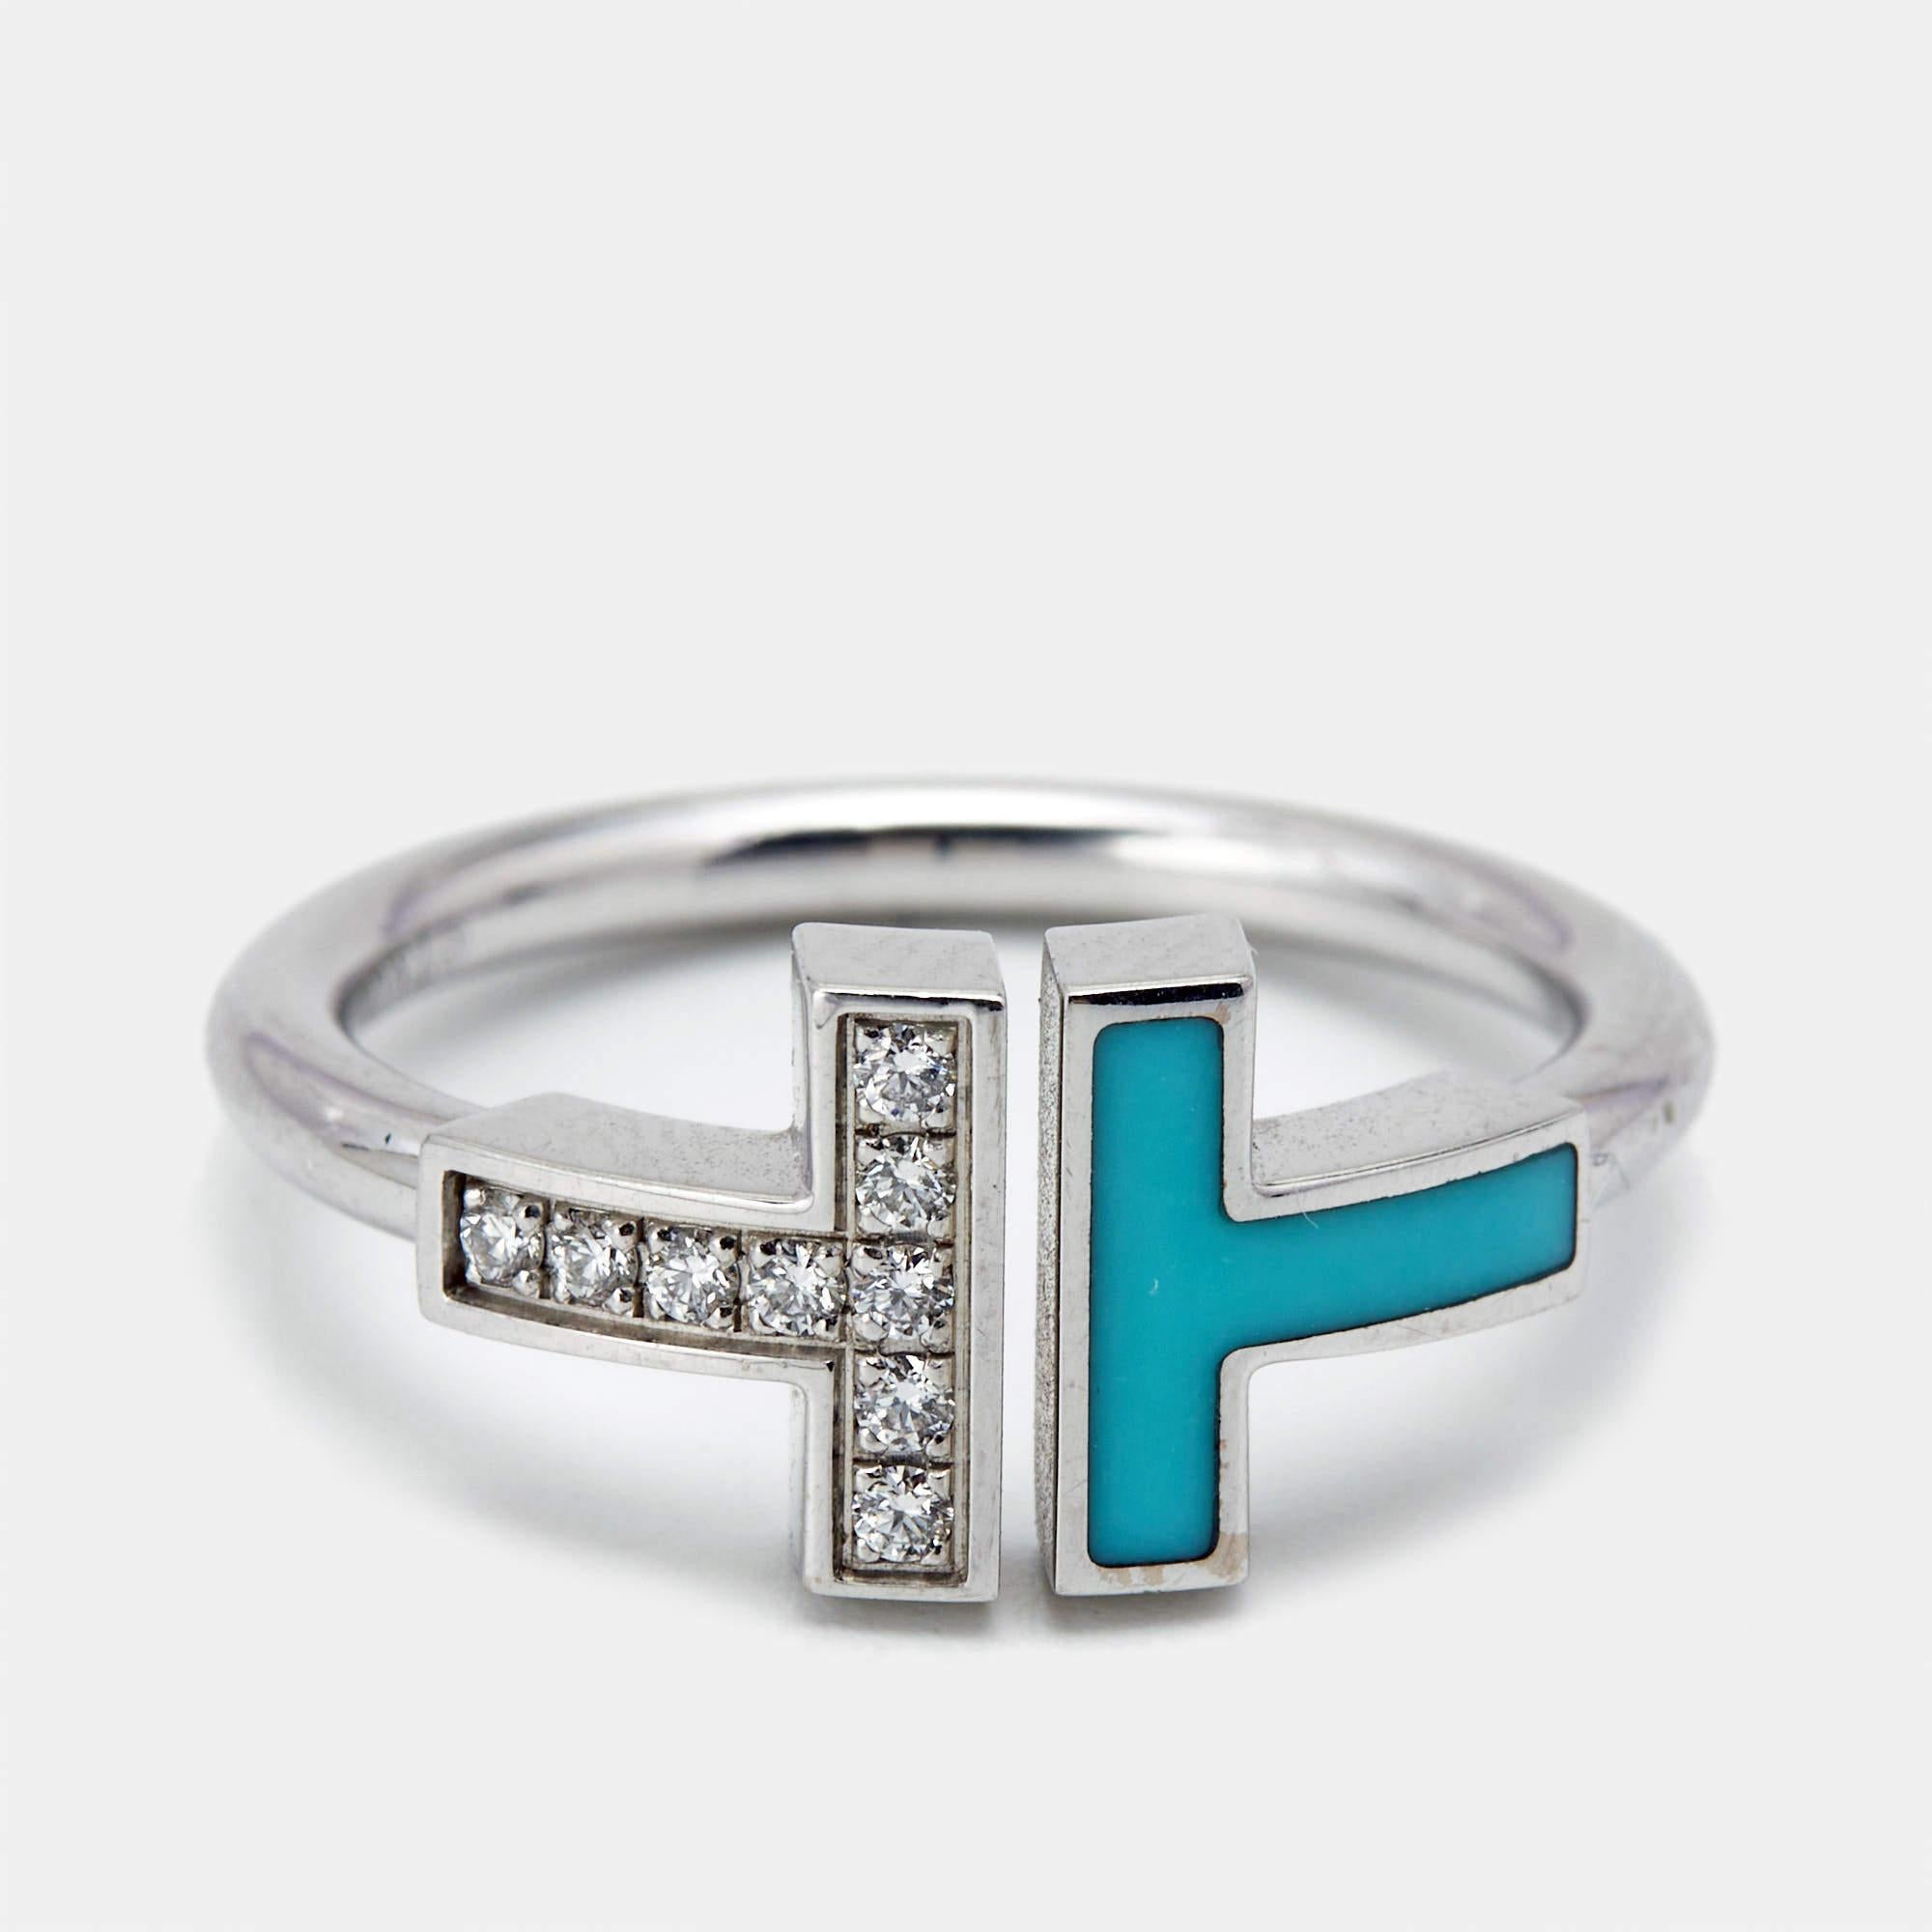 Ein prächtiger Ring von Tiffany & Co., der an Ihrer Hand aufzufallen verspricht. Es ist ein meisterhaft gefertigtes Schmuckstück, das zeitlosen Luxus und anspruchsvolle Eleganz verkörpert.

